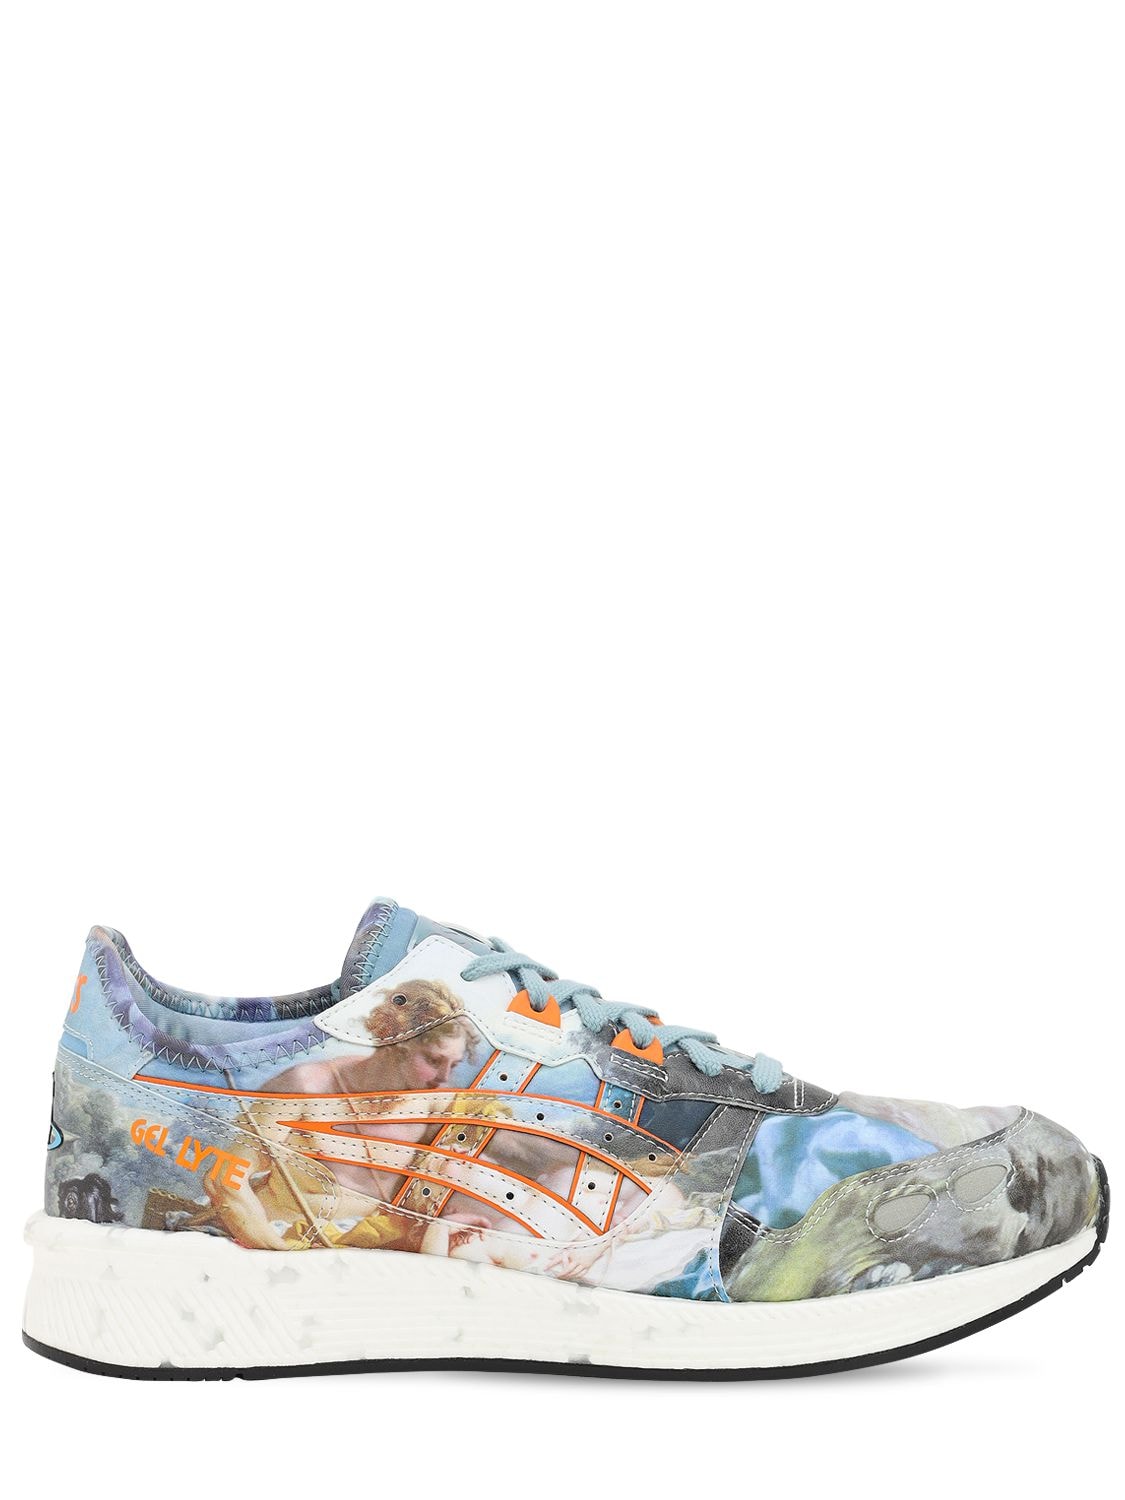 Asics Vivienne Westwood Hypergel-lyte Sneakers In Multicolor